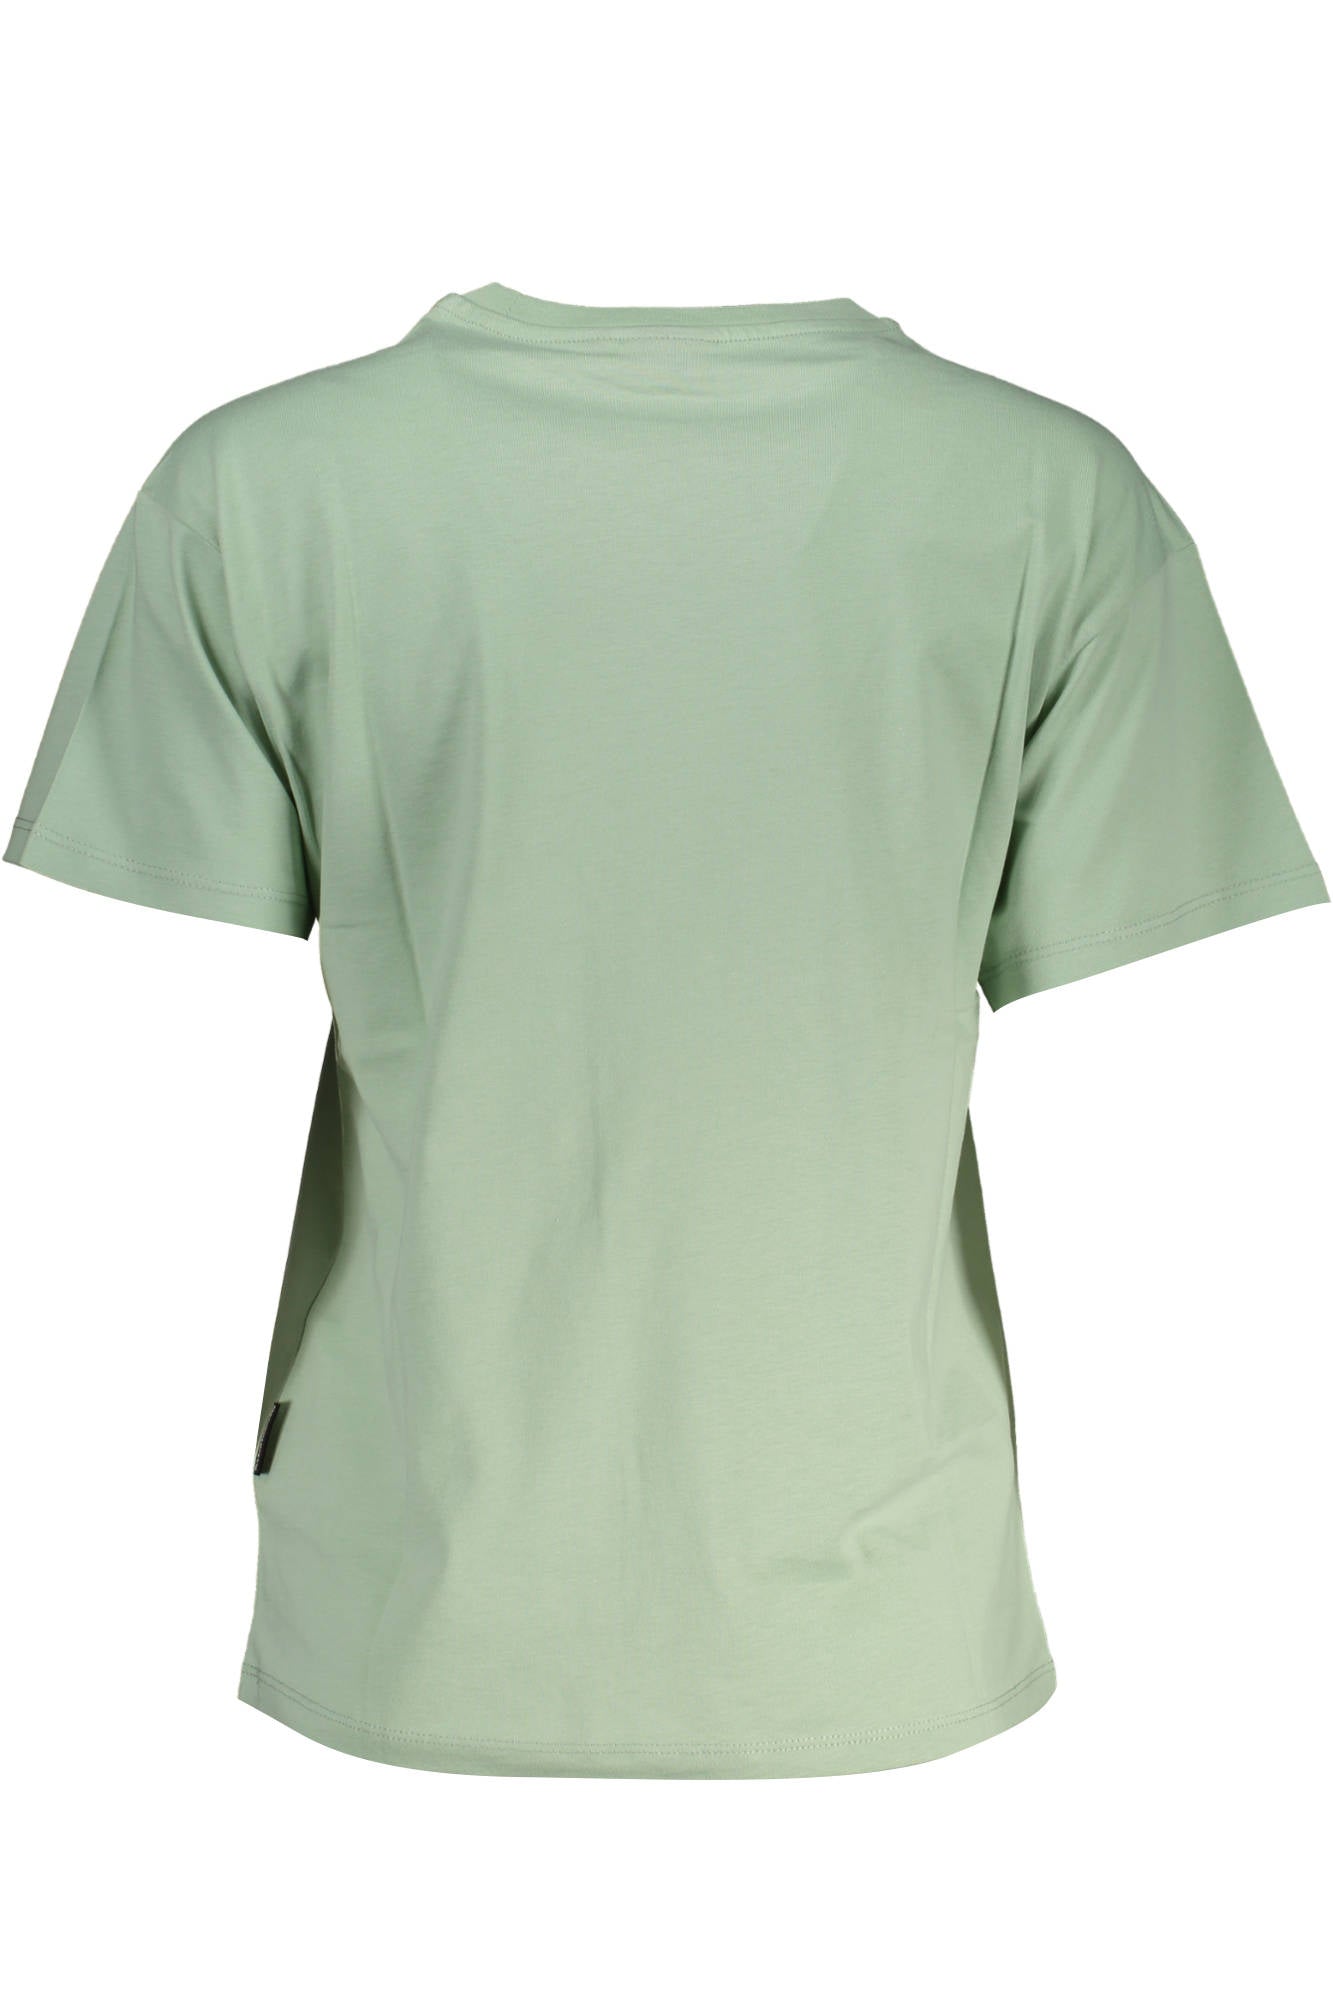 Napapijri Green Cotton Tops & T-Shirt - Fizigo